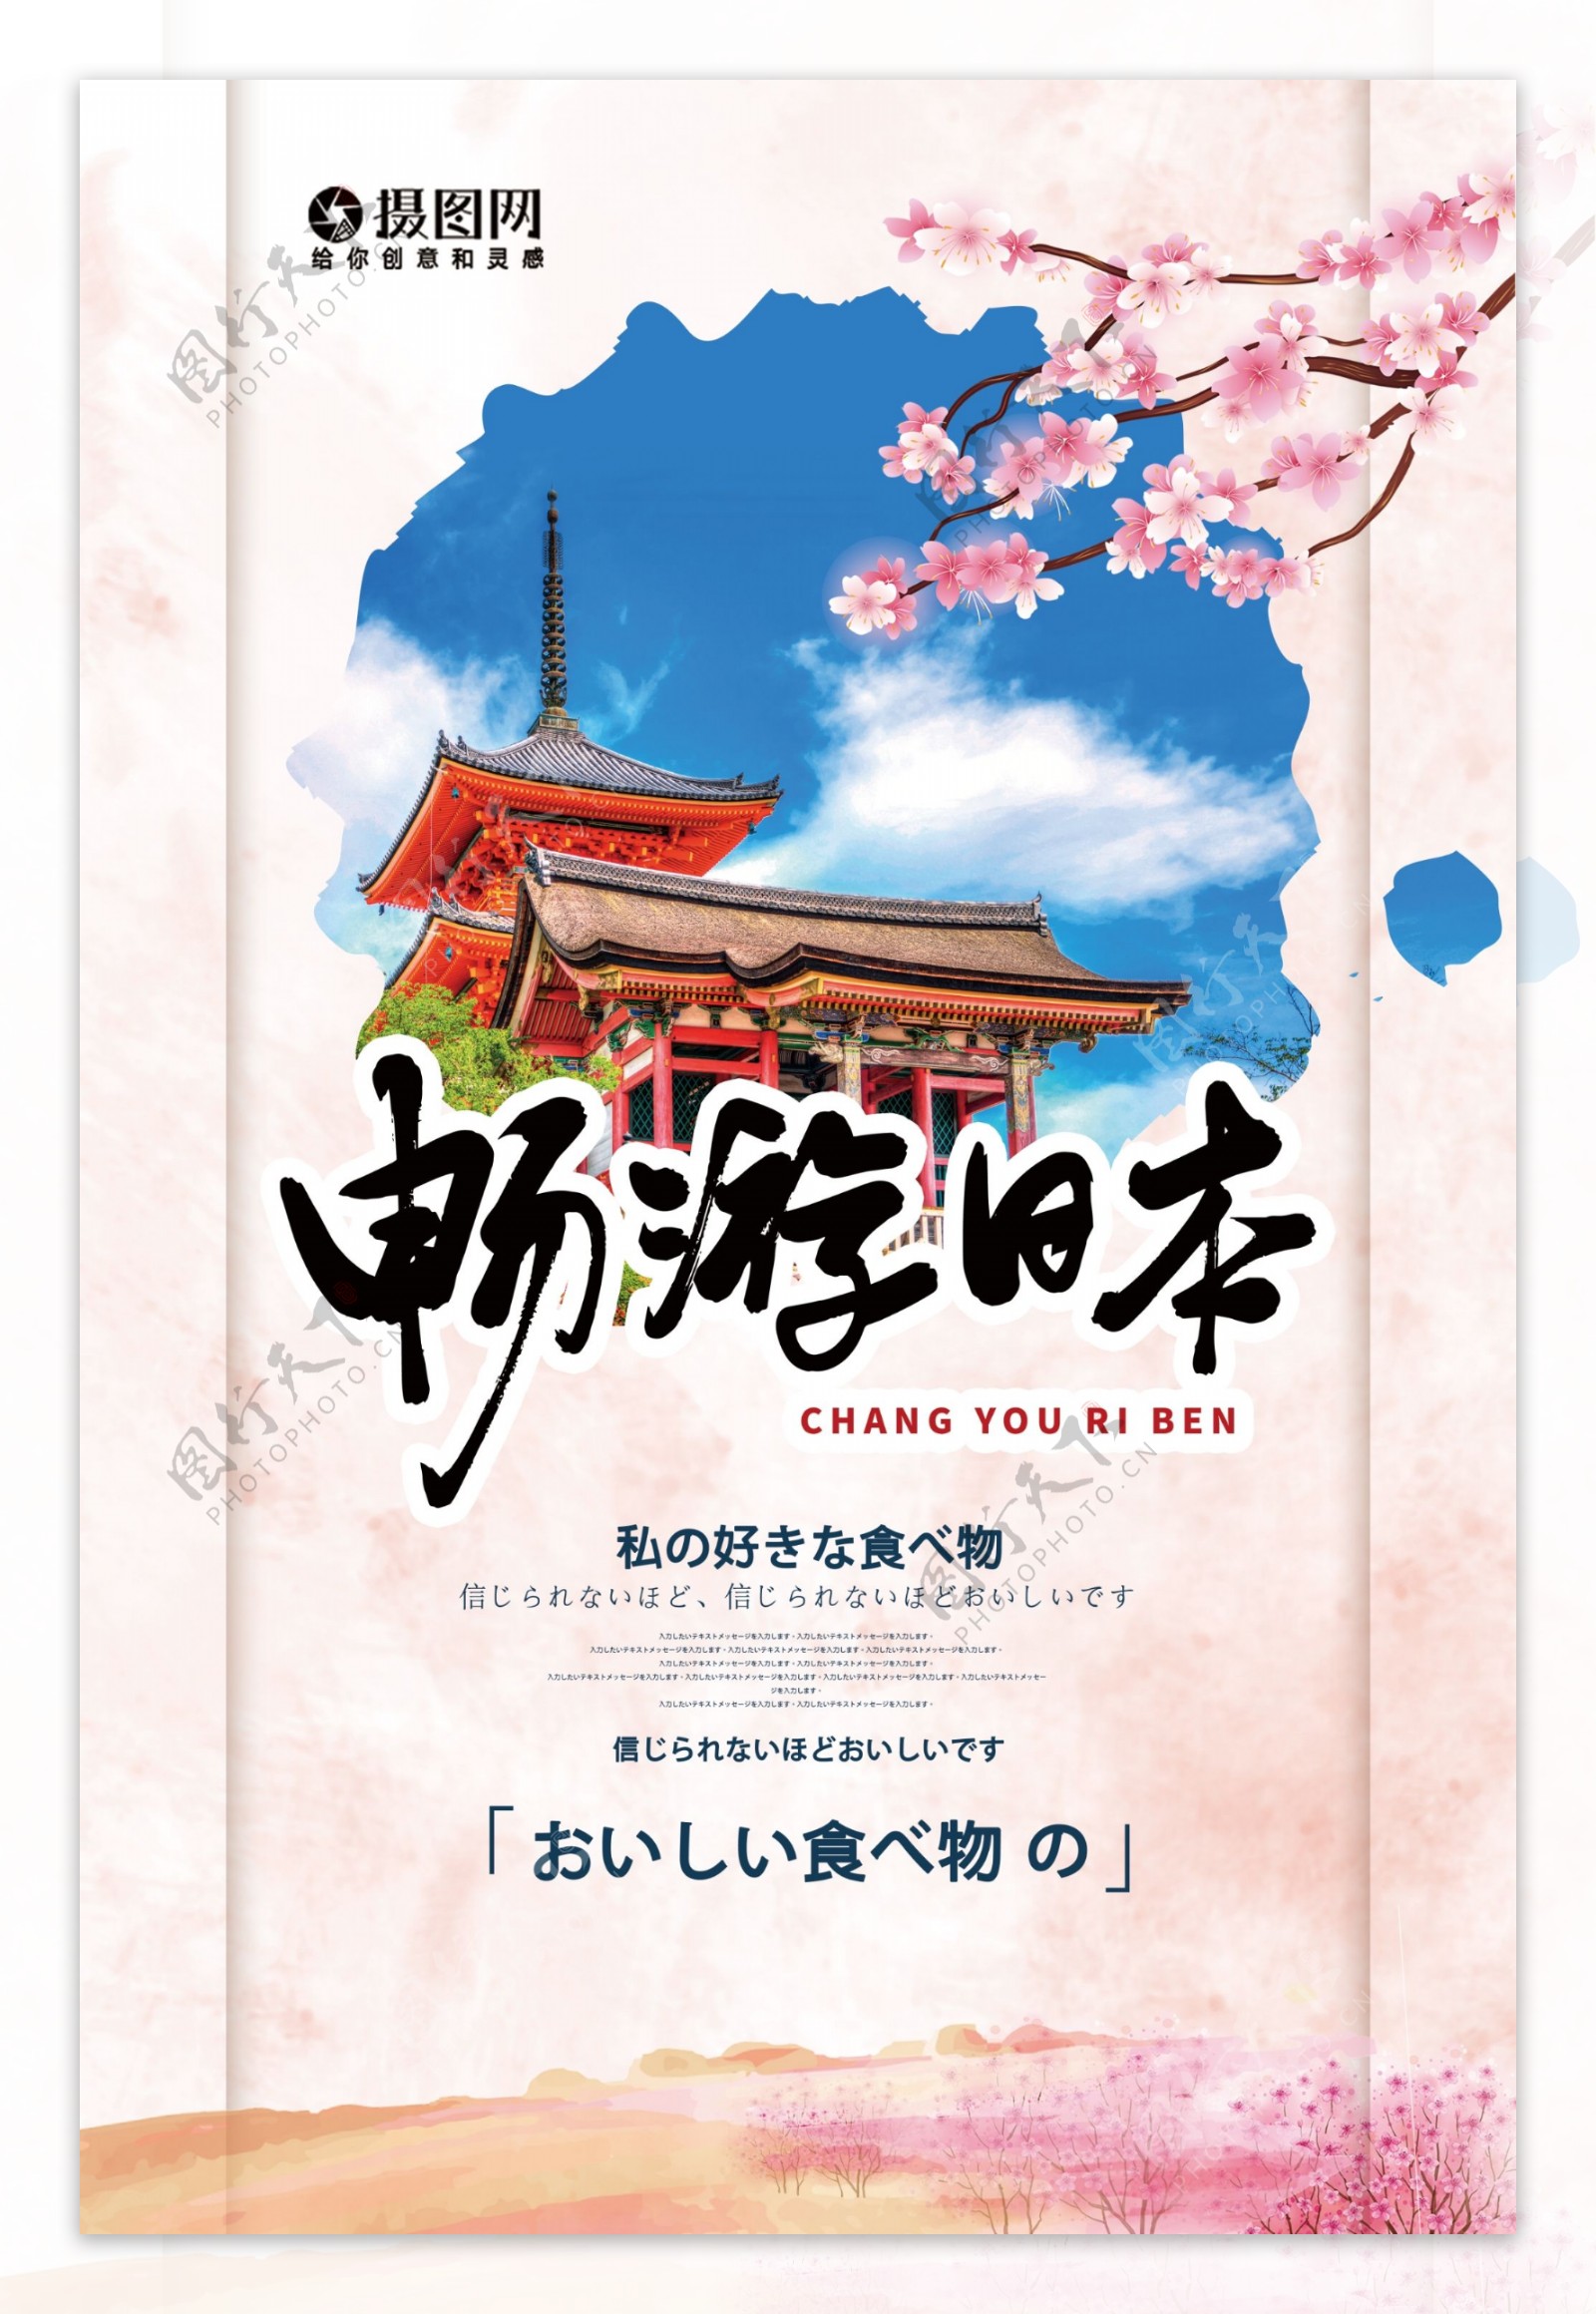 创意大气日本清水寺旅行海报